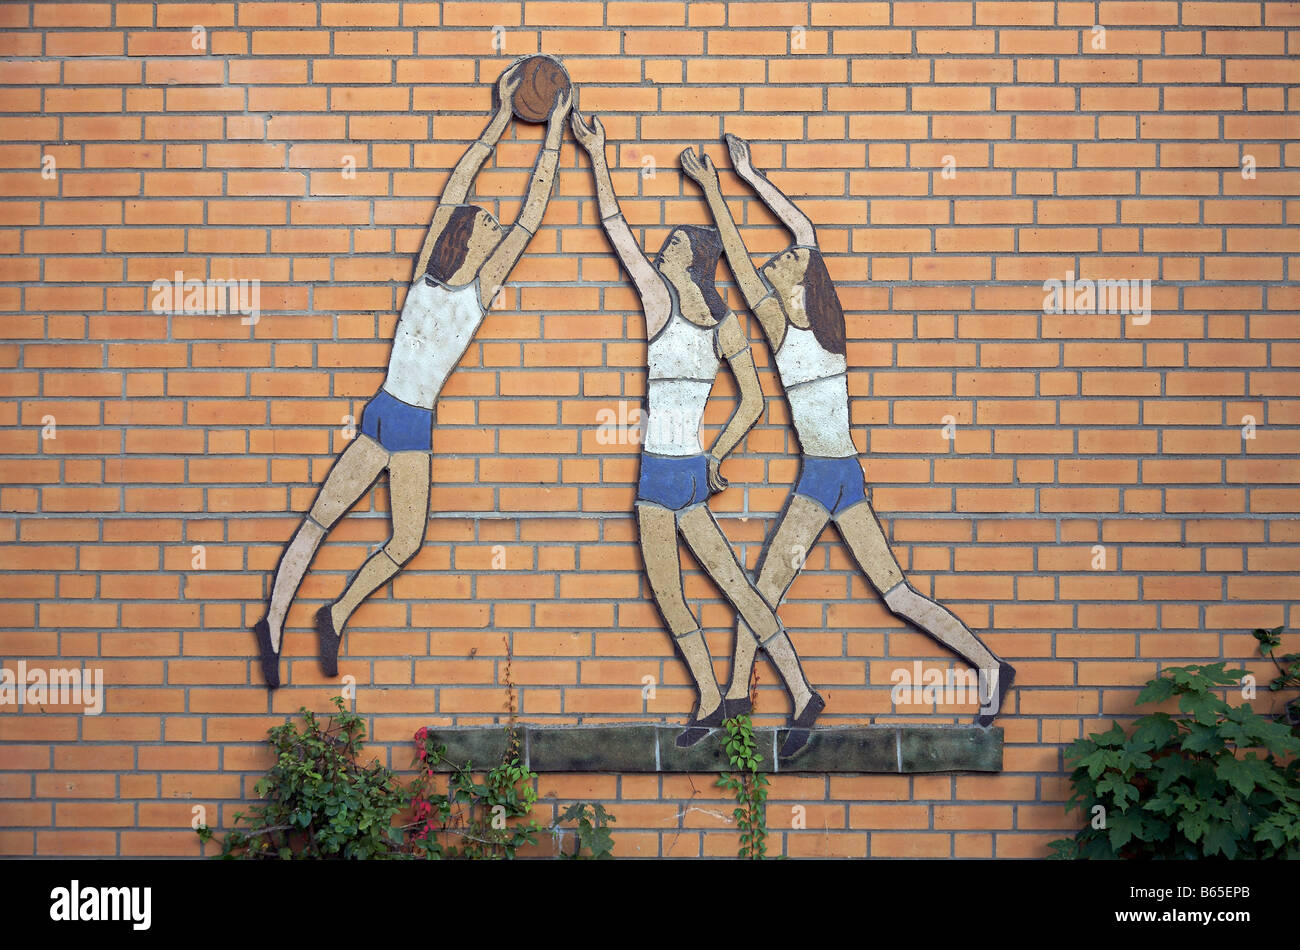 Kachelplastik mit 3 ballspielenden Frauen auf der Gebäudefront einer Turnhalle mural of handball playing girls on a facade Stock Photo